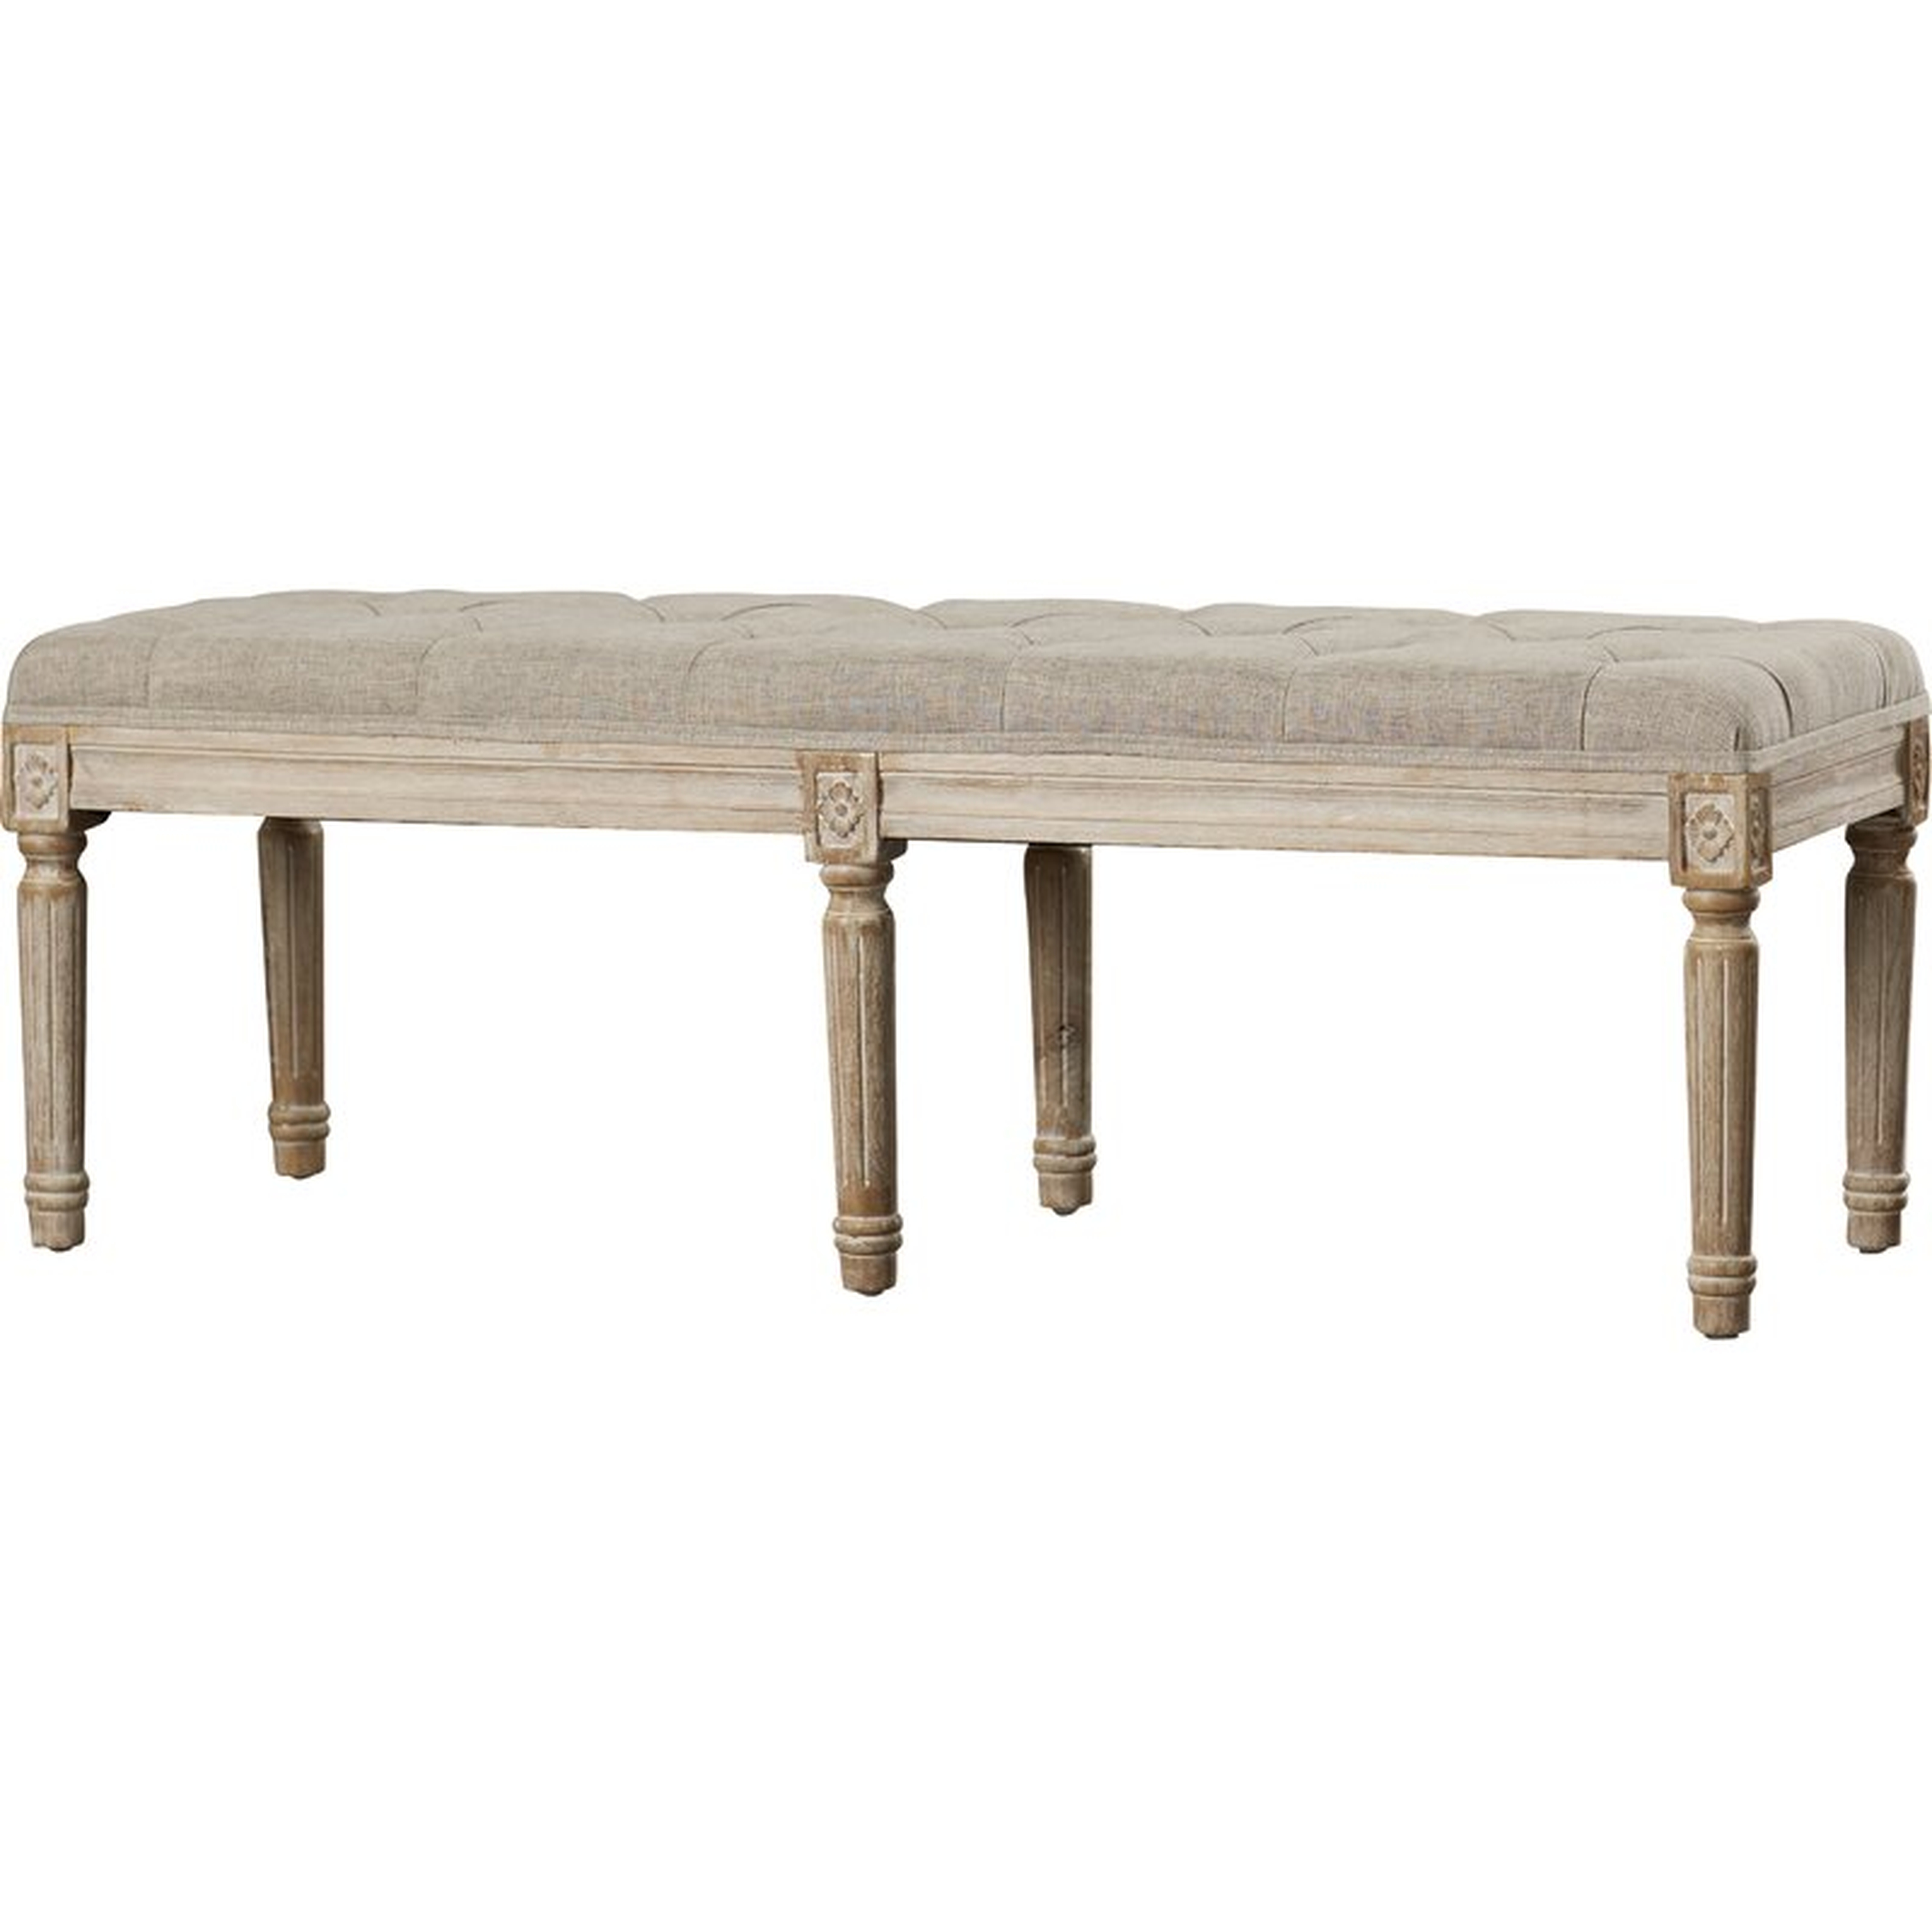 Dahlonega Upholstered Bench - Wayfair